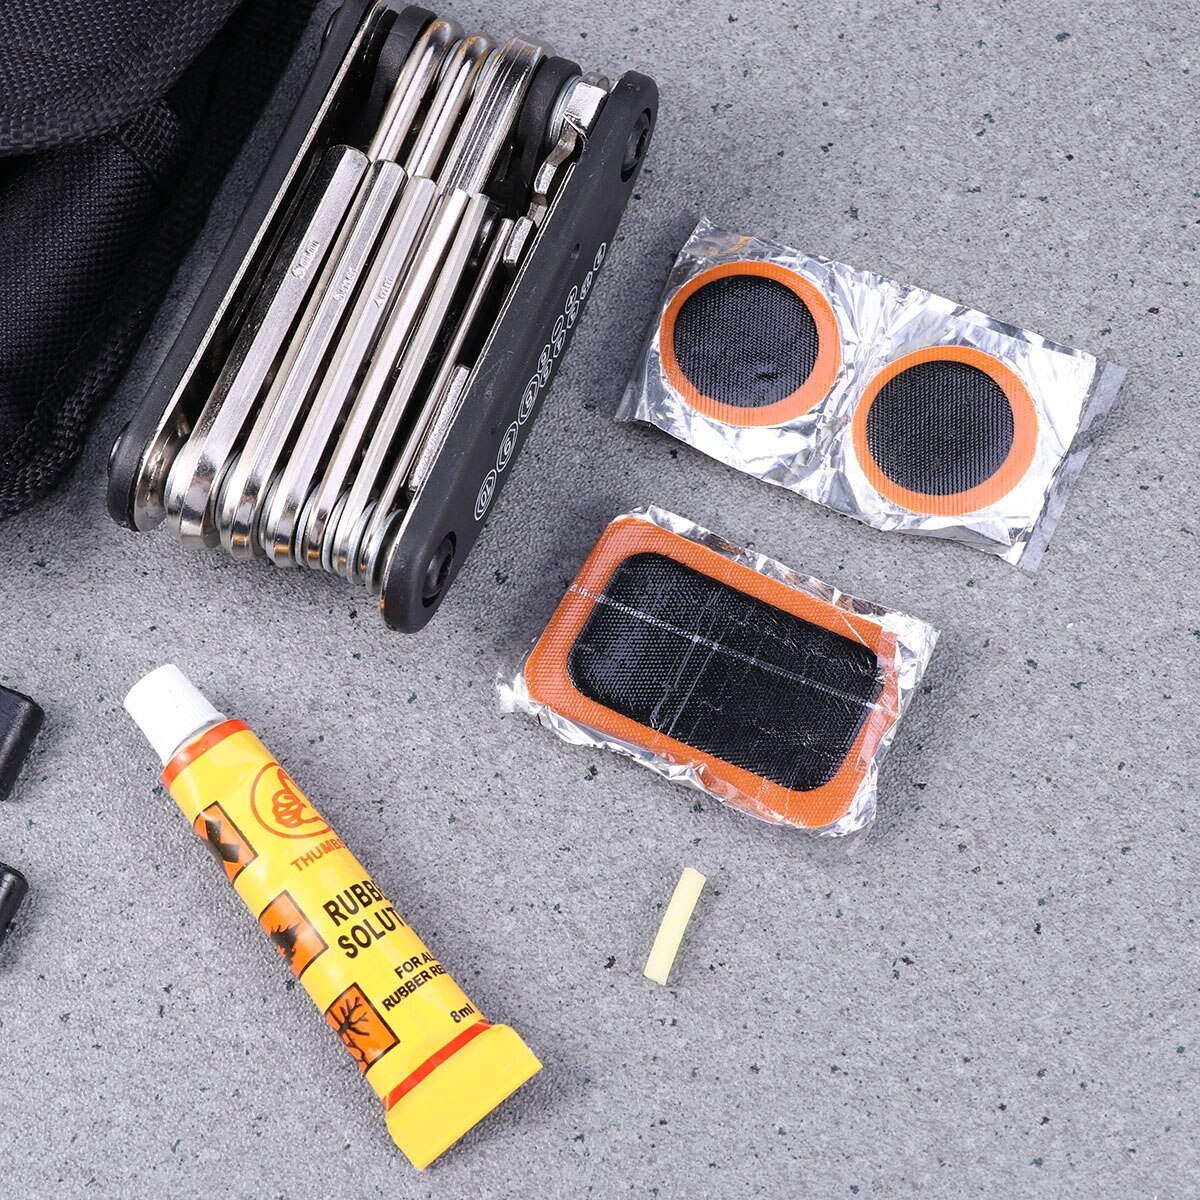 Bộ Vá Săm Lốp Sửa Chữa Xe Đạp Đa Năng Mini Tiện Dụng VS-30 Bỏ Túi (Kèm Miếng Vá) có thanh nạy nhựa cứng - Mai Lee